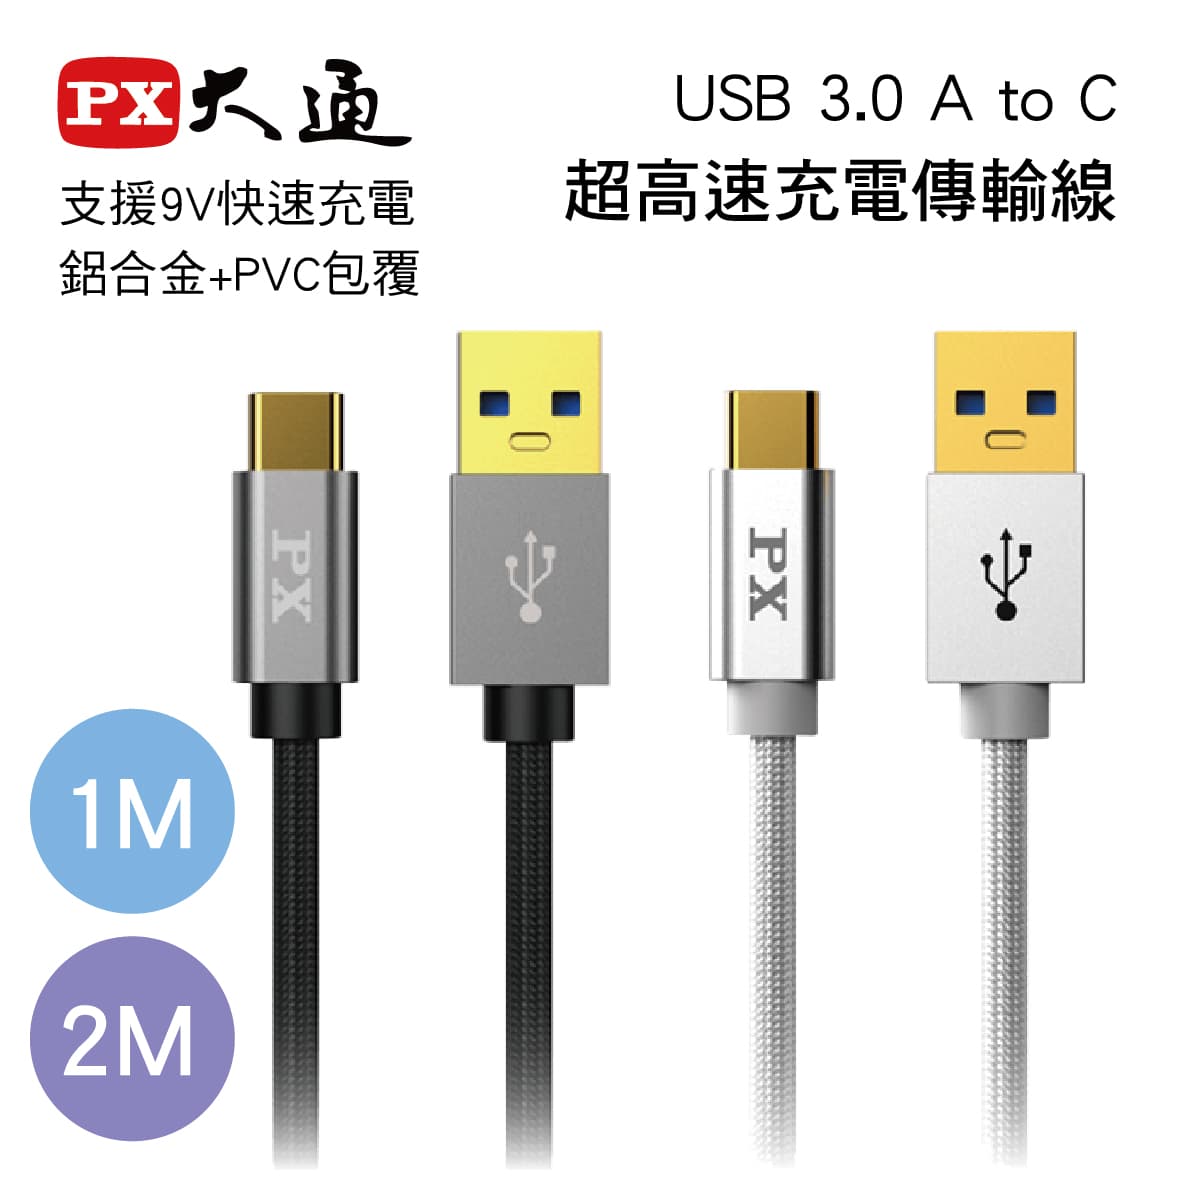 真便宜 PX大通 UAC3 USB 3.0 A to C超高速充電傳輸線1M/2M(黑/白)